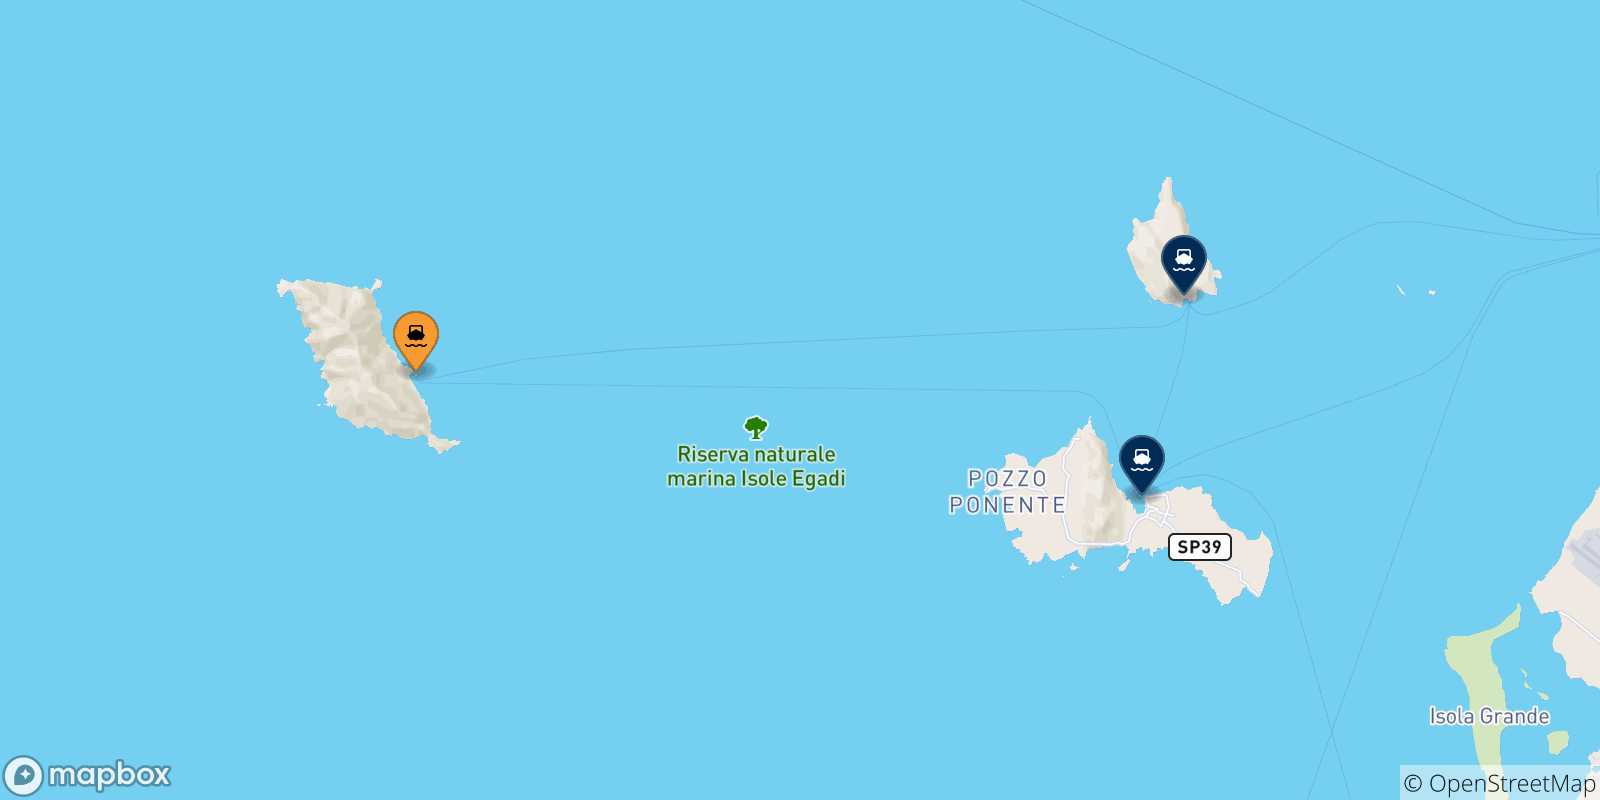 Mappa delle possibili rotte tra Marettimo e le Isole Egadi